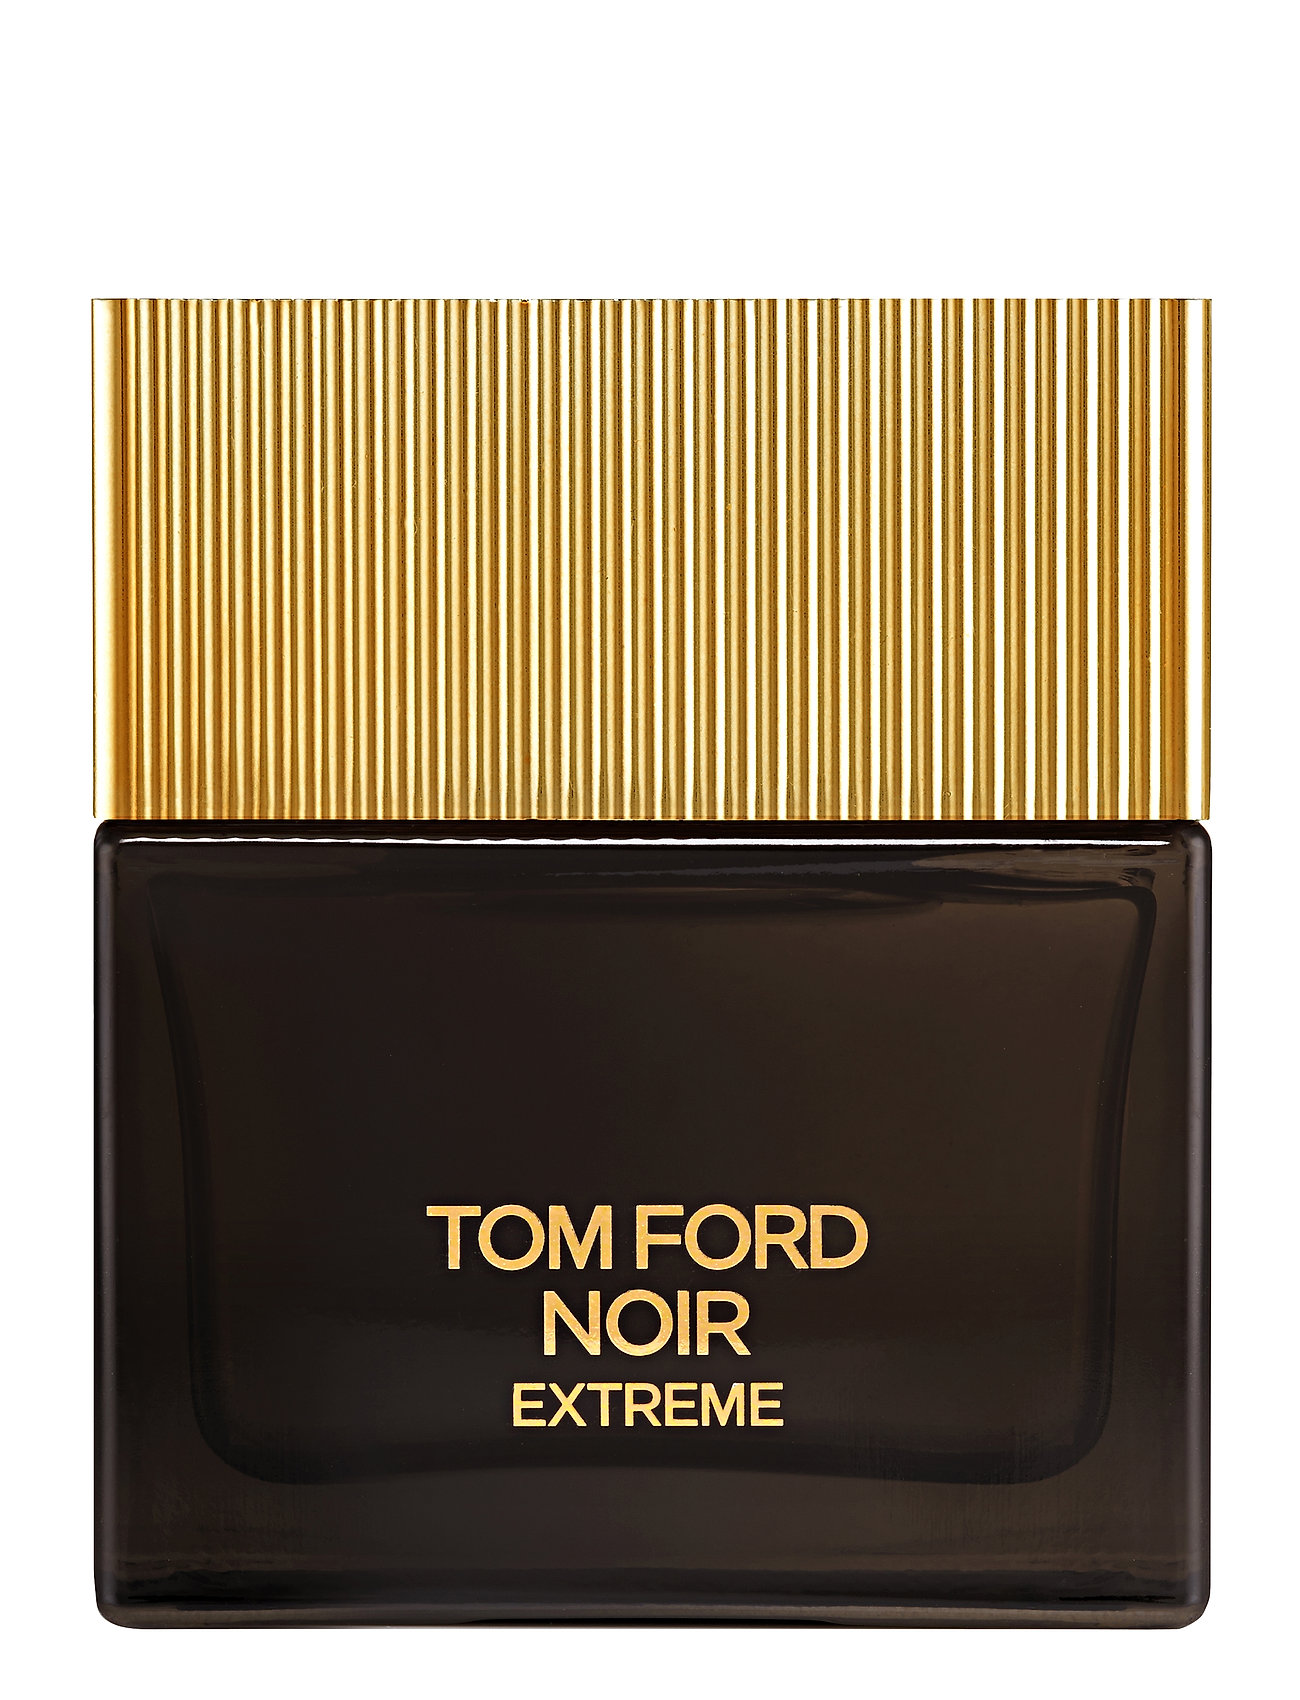 TOM FORD Noir Extreme Eau De Parfum (Clear) - 1484 kr | Boozt.com